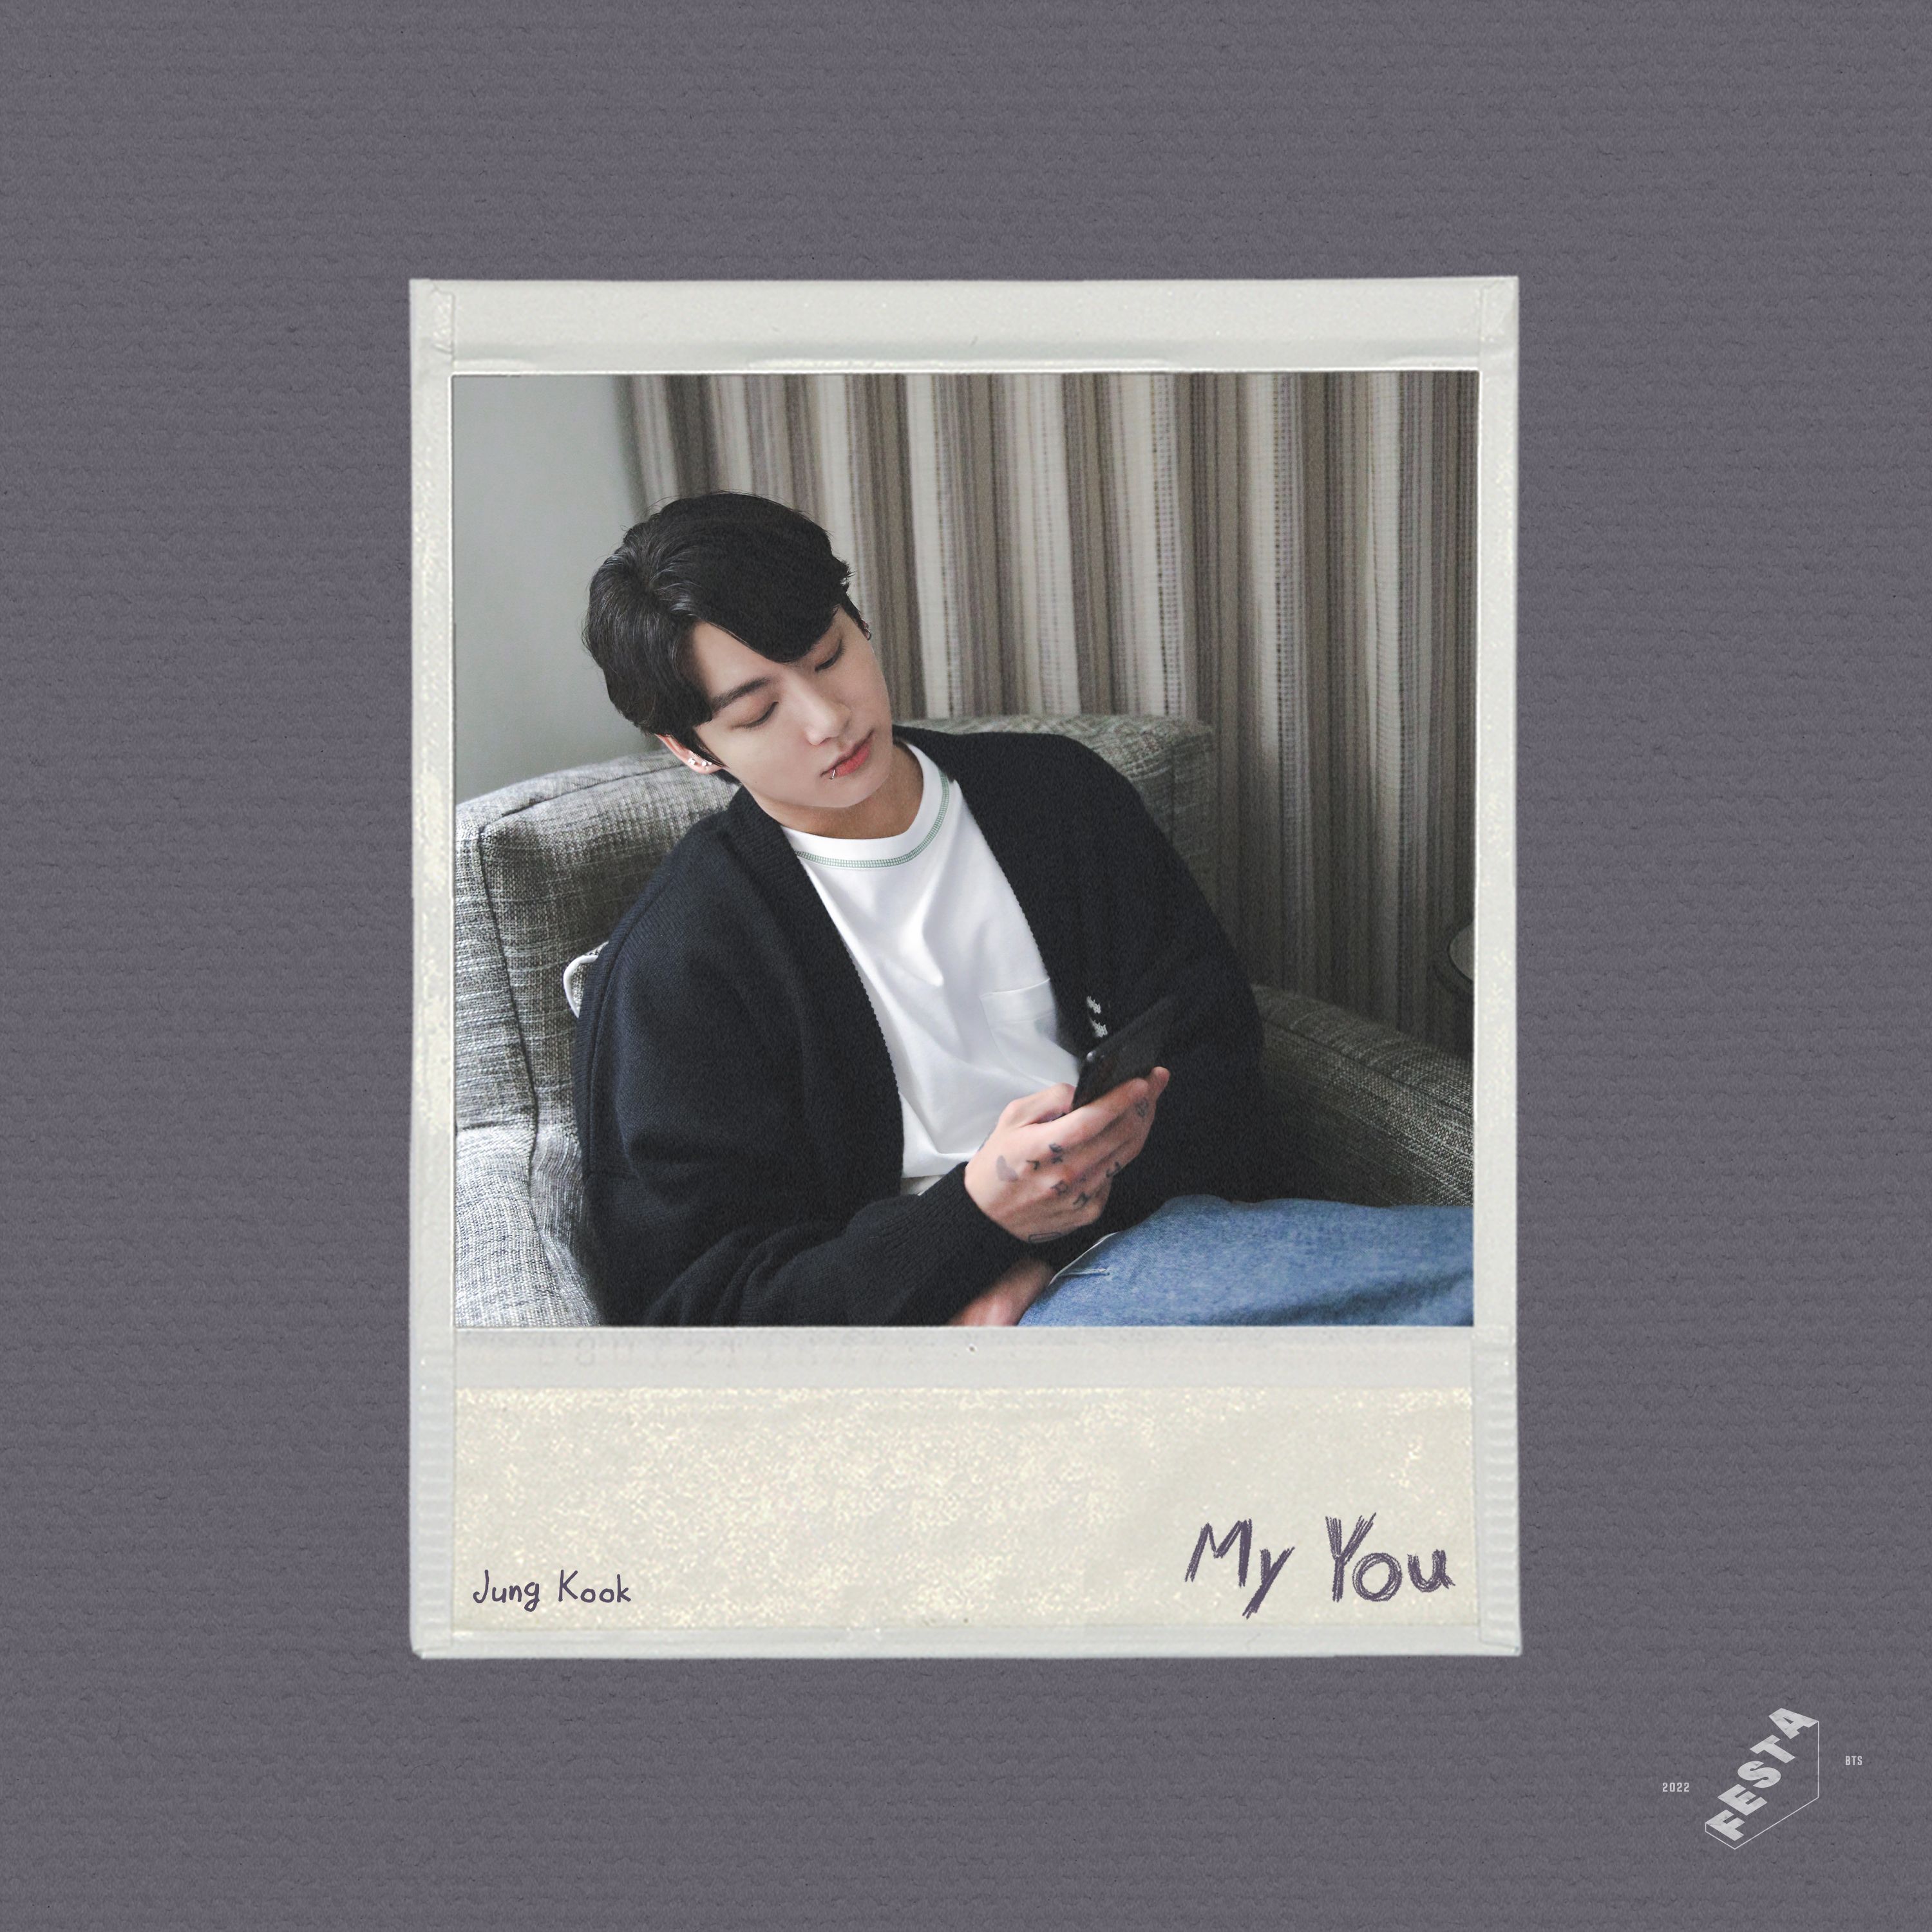 下载 My You by Jung Kook of BTS